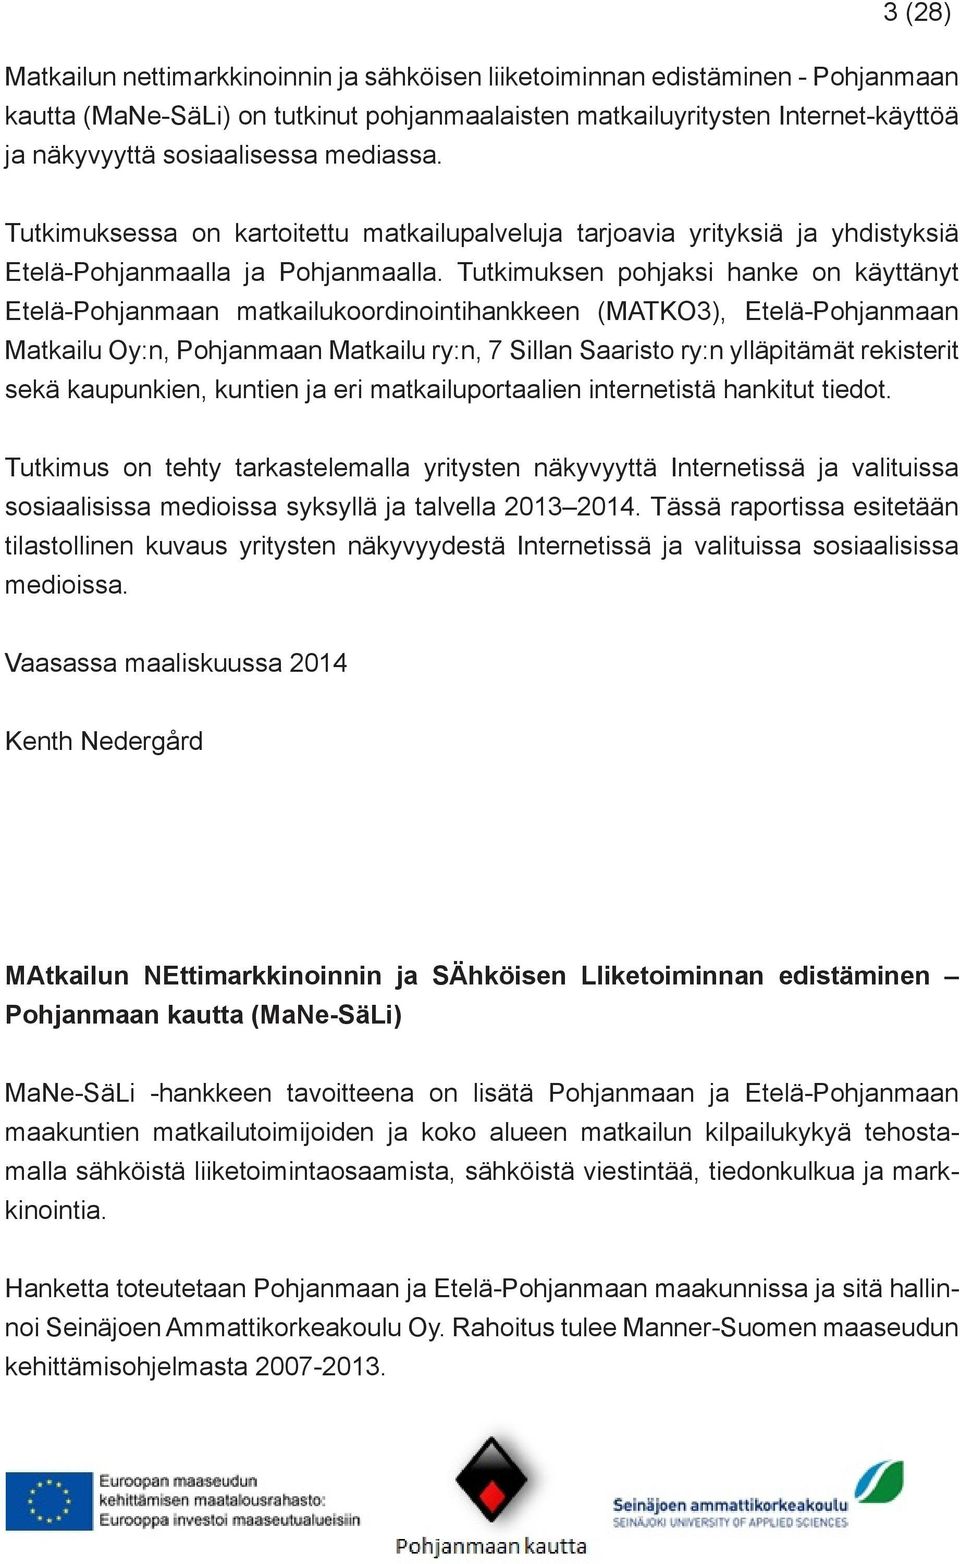 Tutkimuksen pohjaksi hanke on käyttänyt Etelä-Pohjanmaan matkailukoordinointihankkeen (MATKO3), Etelä-Pohjanmaan Matkailu Oy:n, Pohjanmaan Matkailu ry:n, 7 Sillan Saaristo ry:n ylläpitämät rekisterit